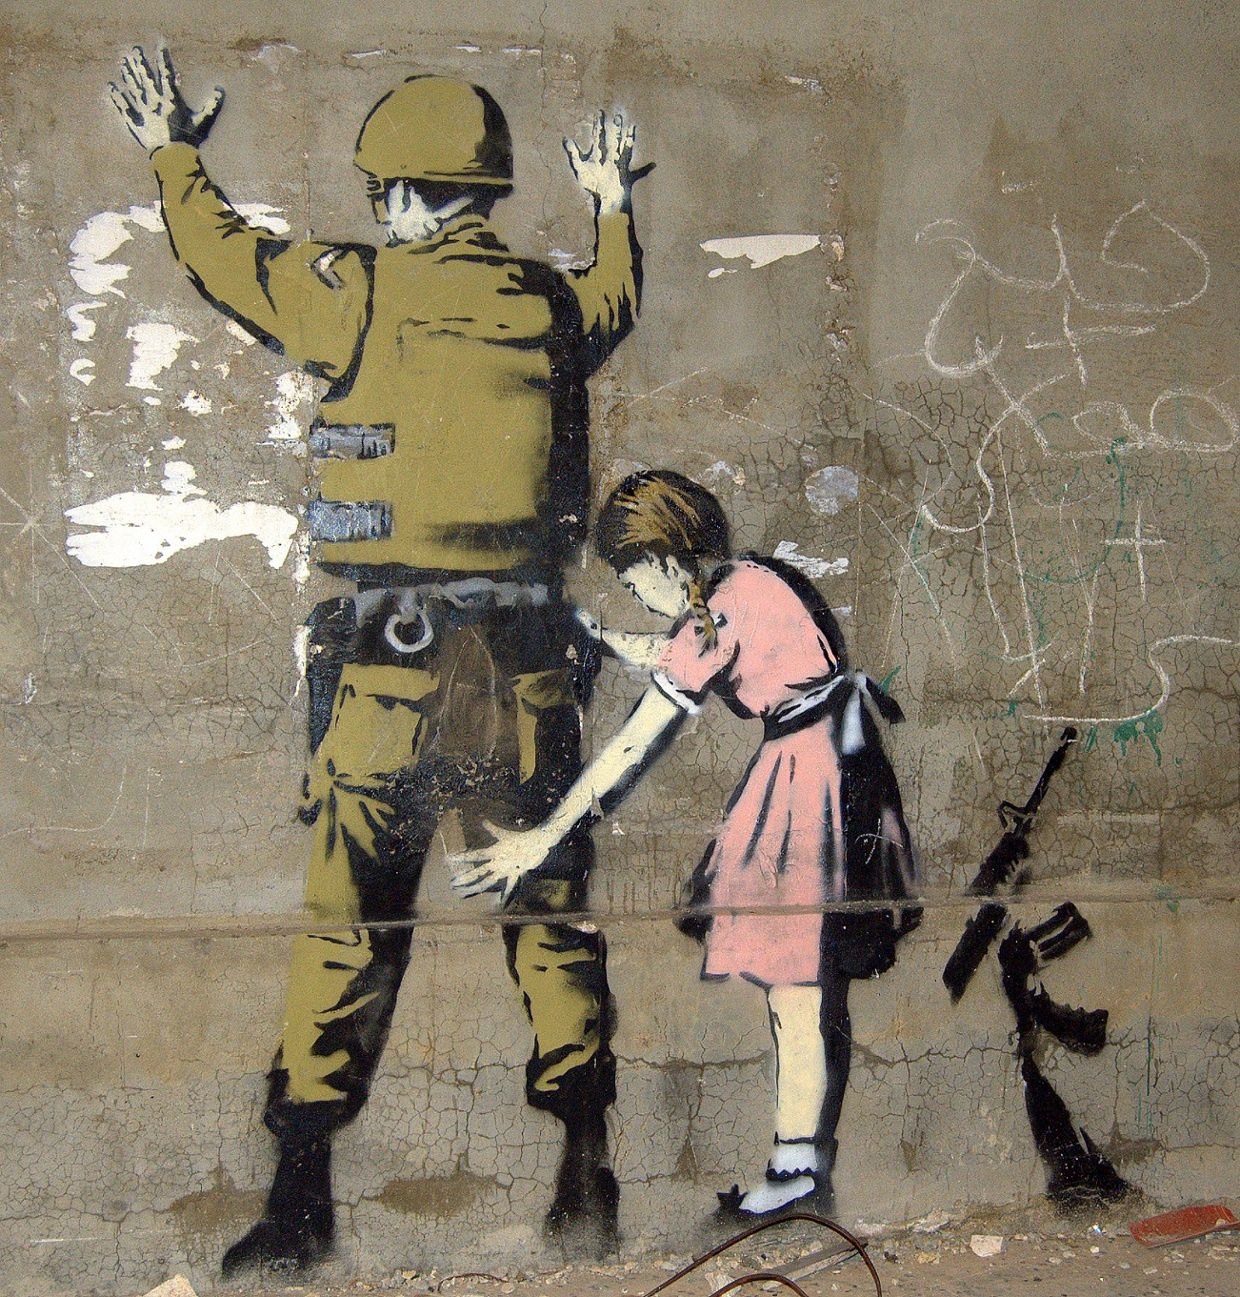 L'art de Banksy - Profmichelle